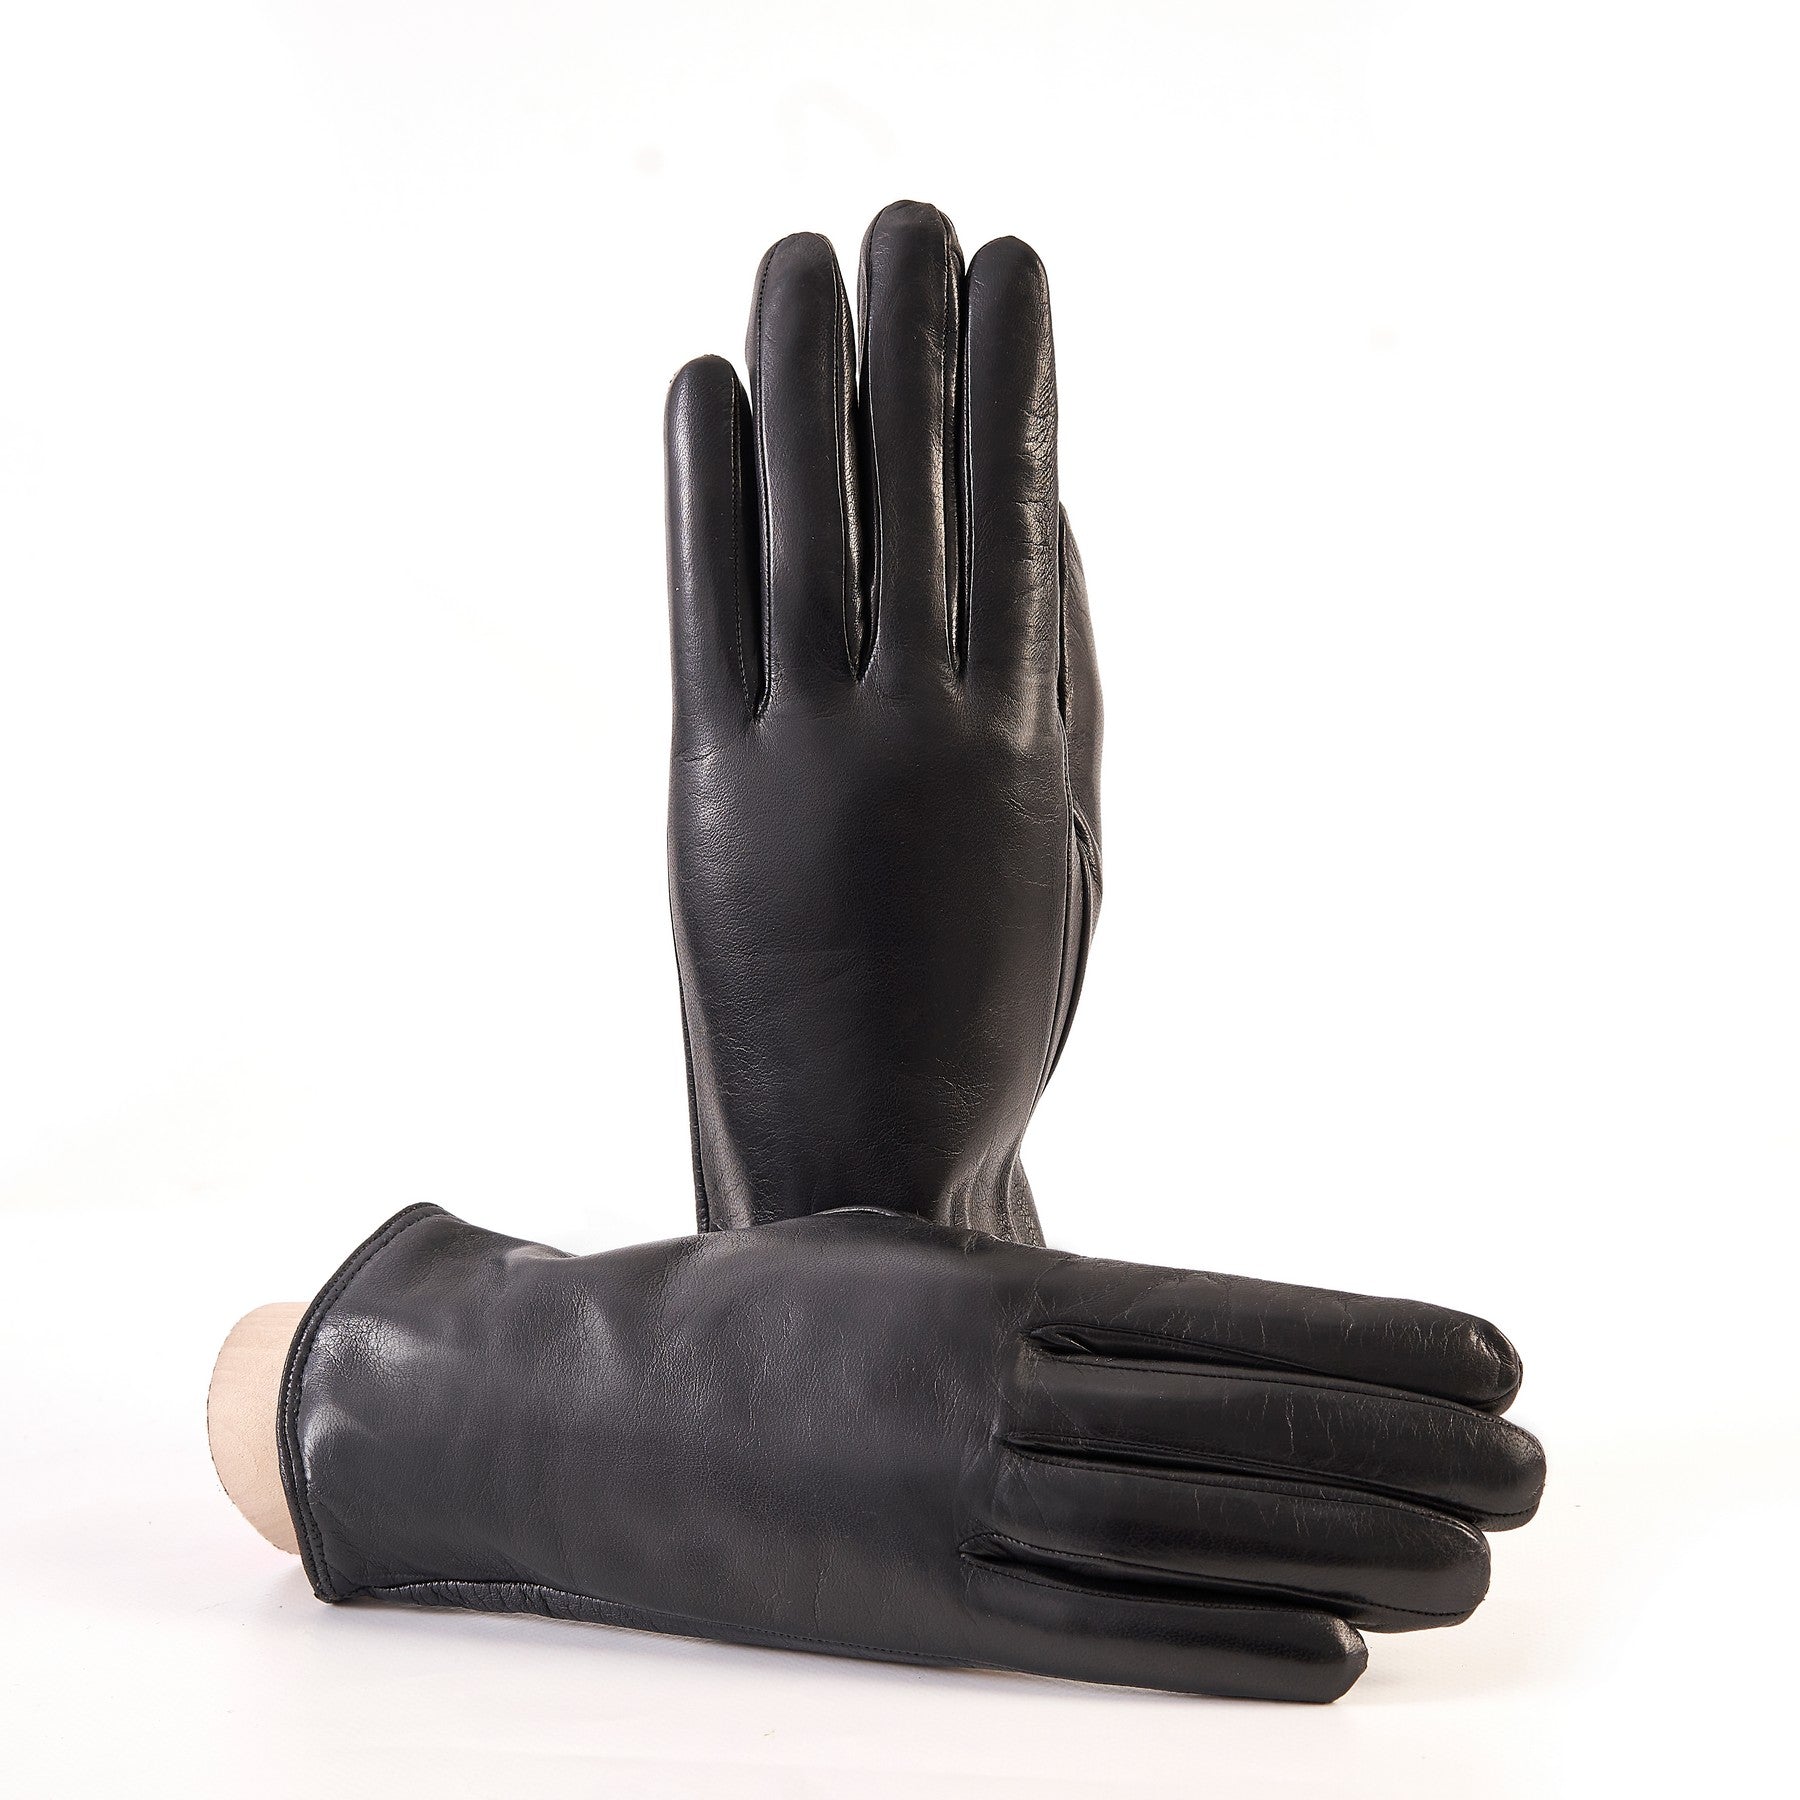 Gala Gloves: スウェードグローブ - 手袋